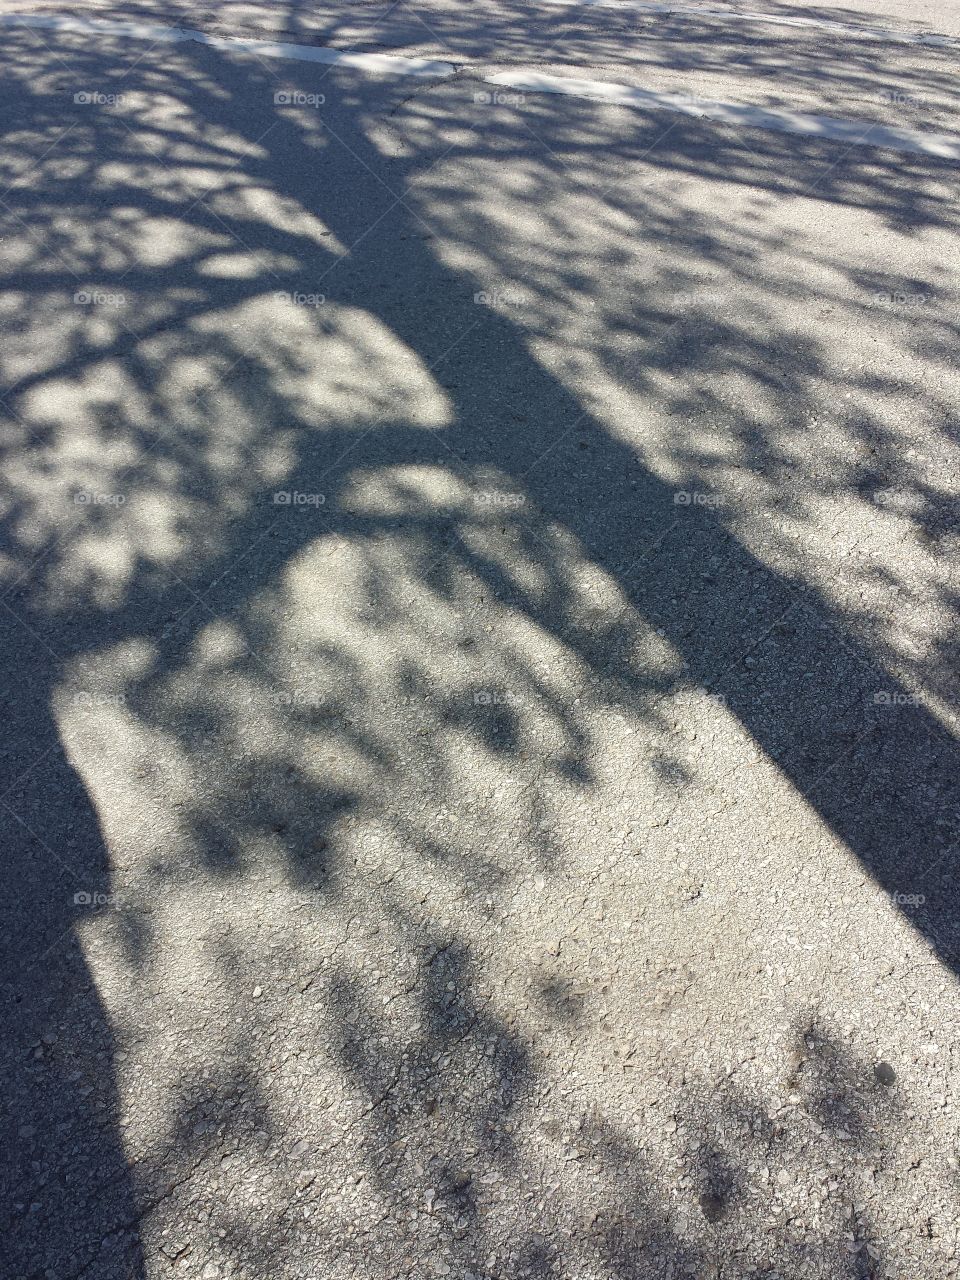 Shadow on tree